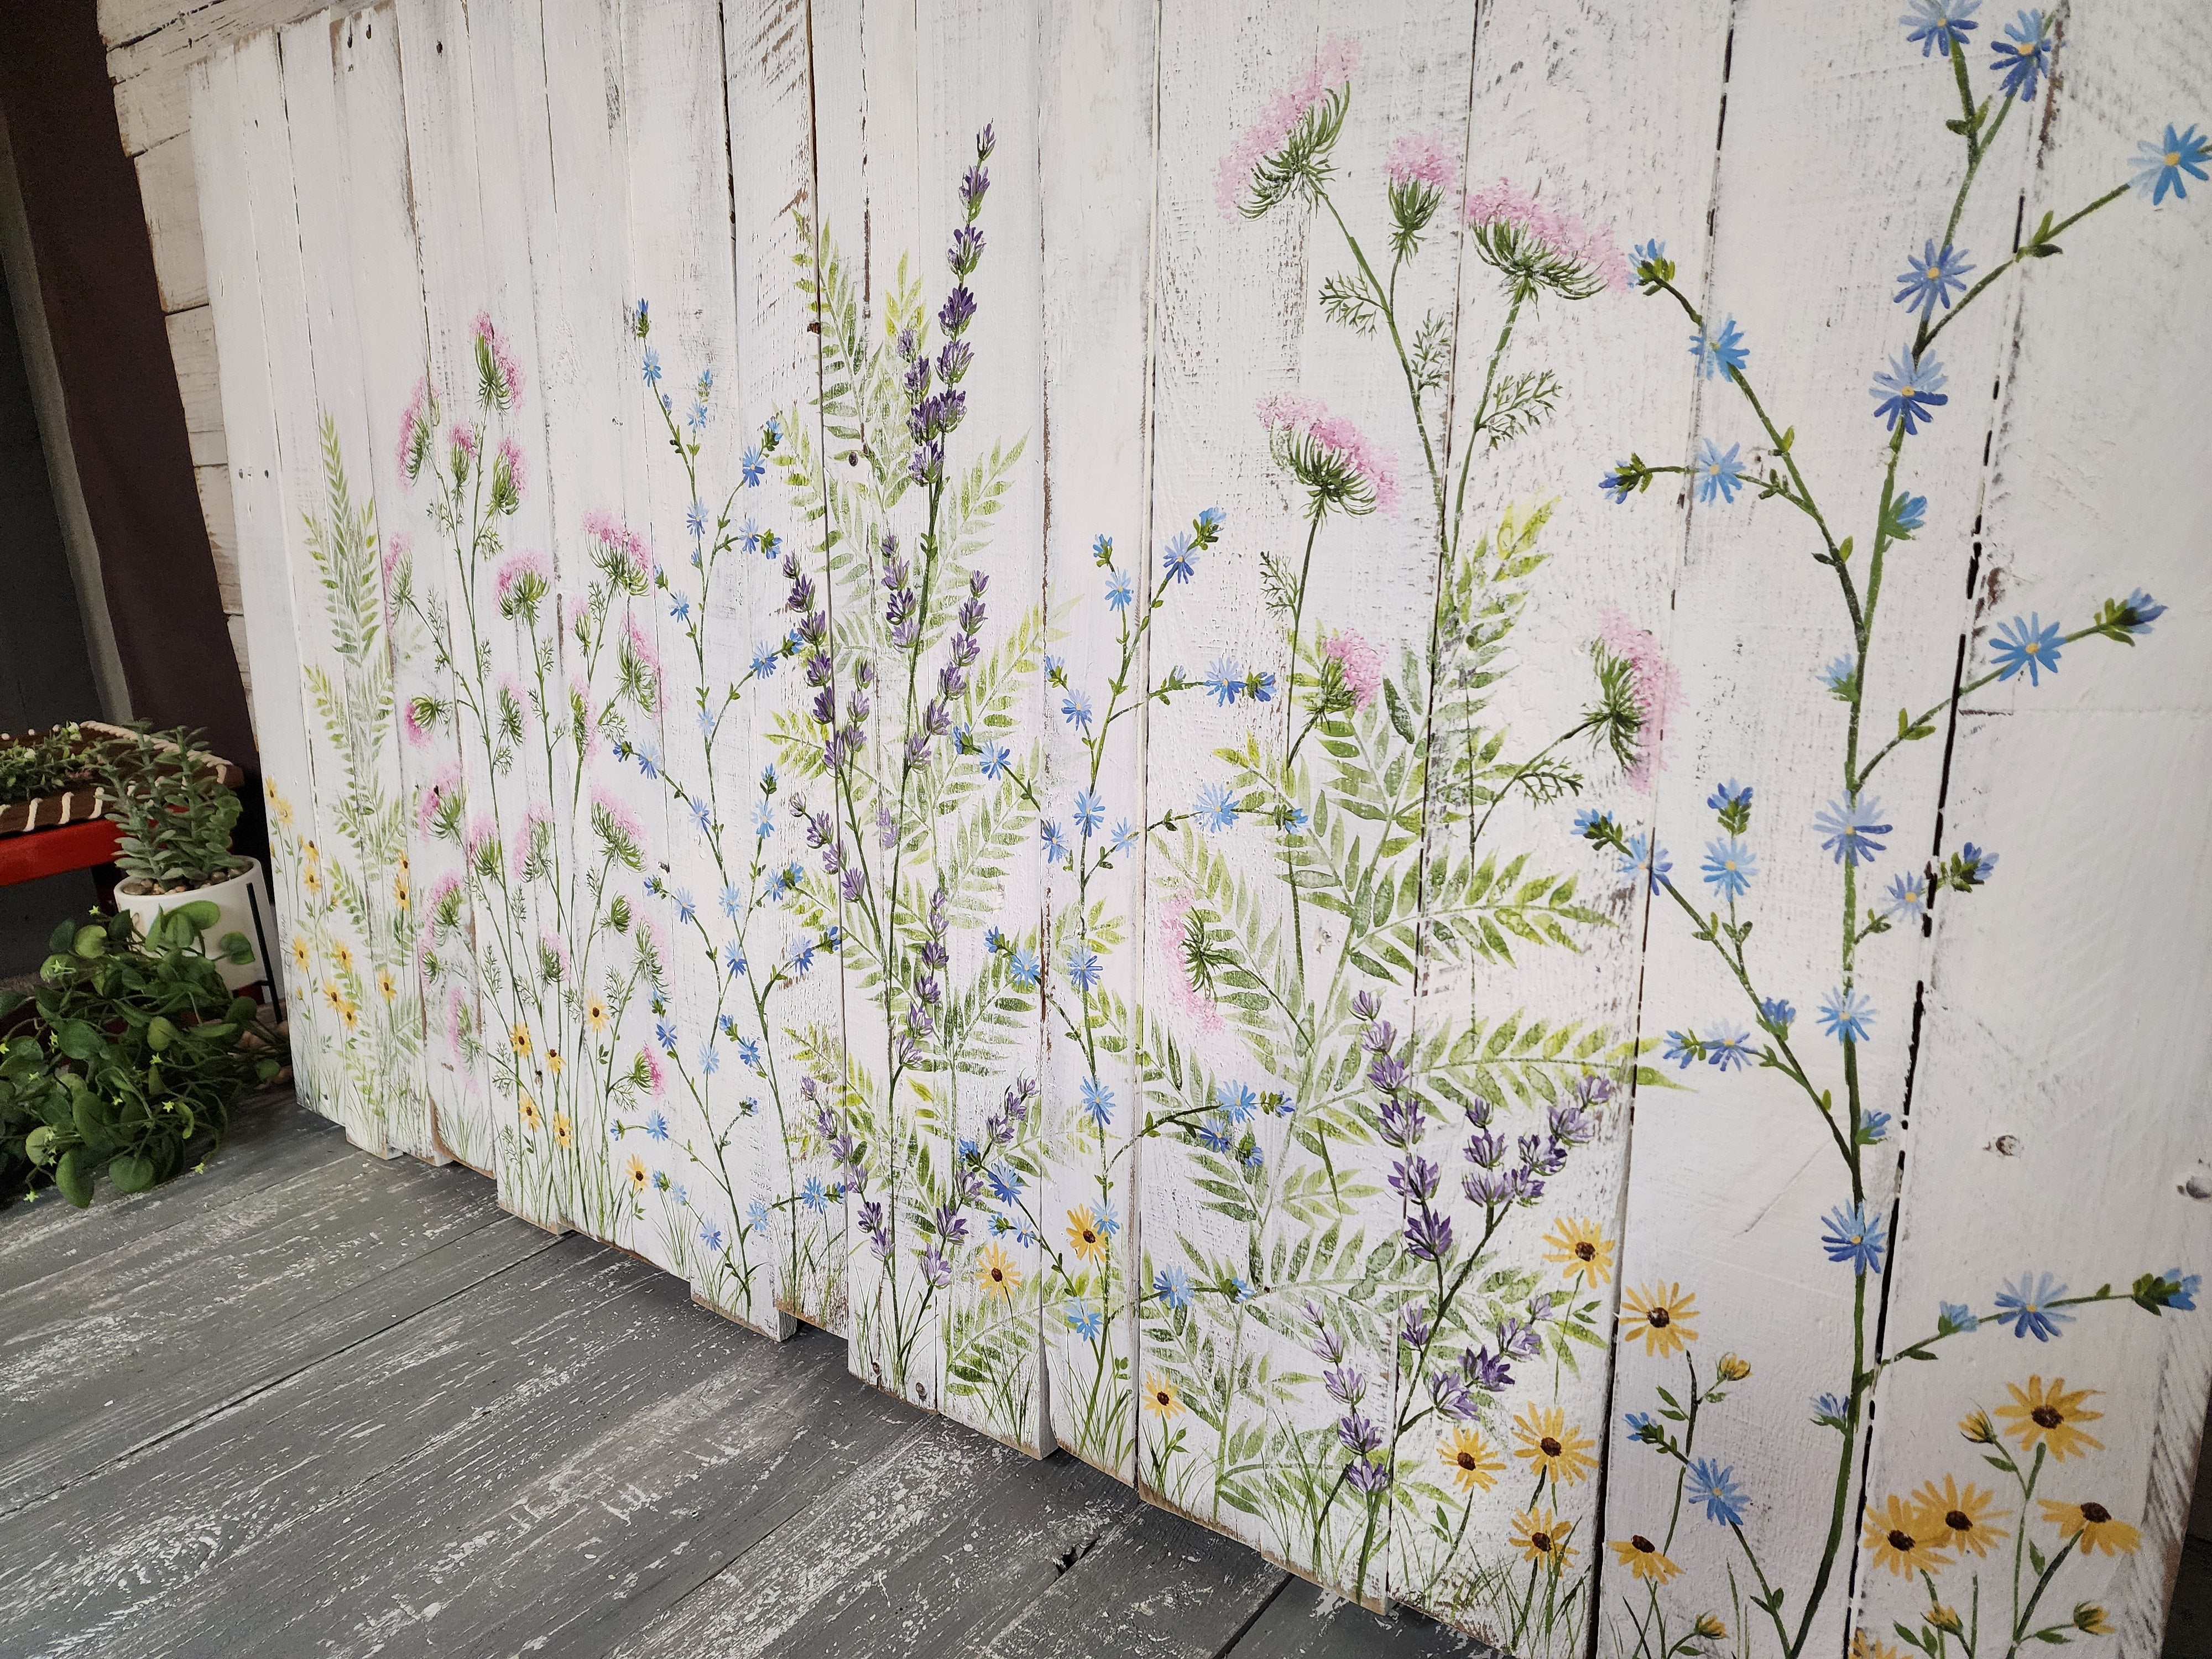 Flower Headboard Pallet art, farmhouse decor headboard,  hand painted flowers on picket fence,  Girls Bedroom art